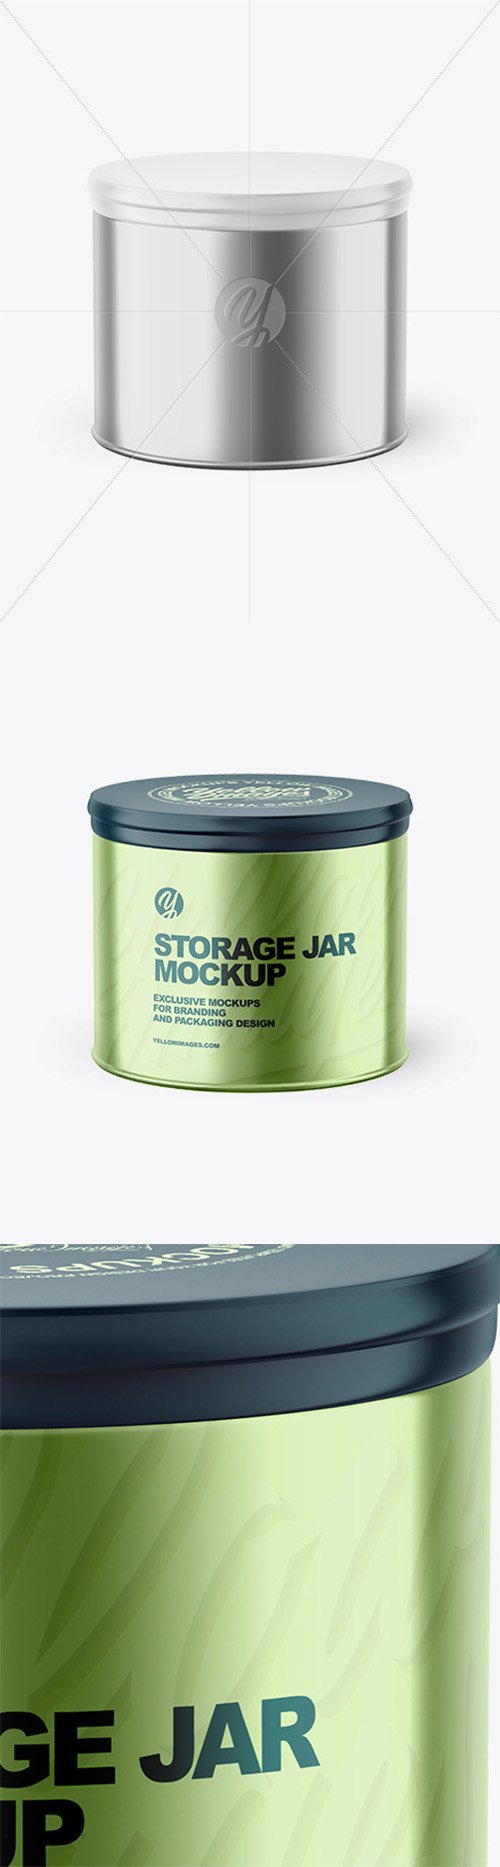 Metalliс Storage Jar Mockup 80369 TIF